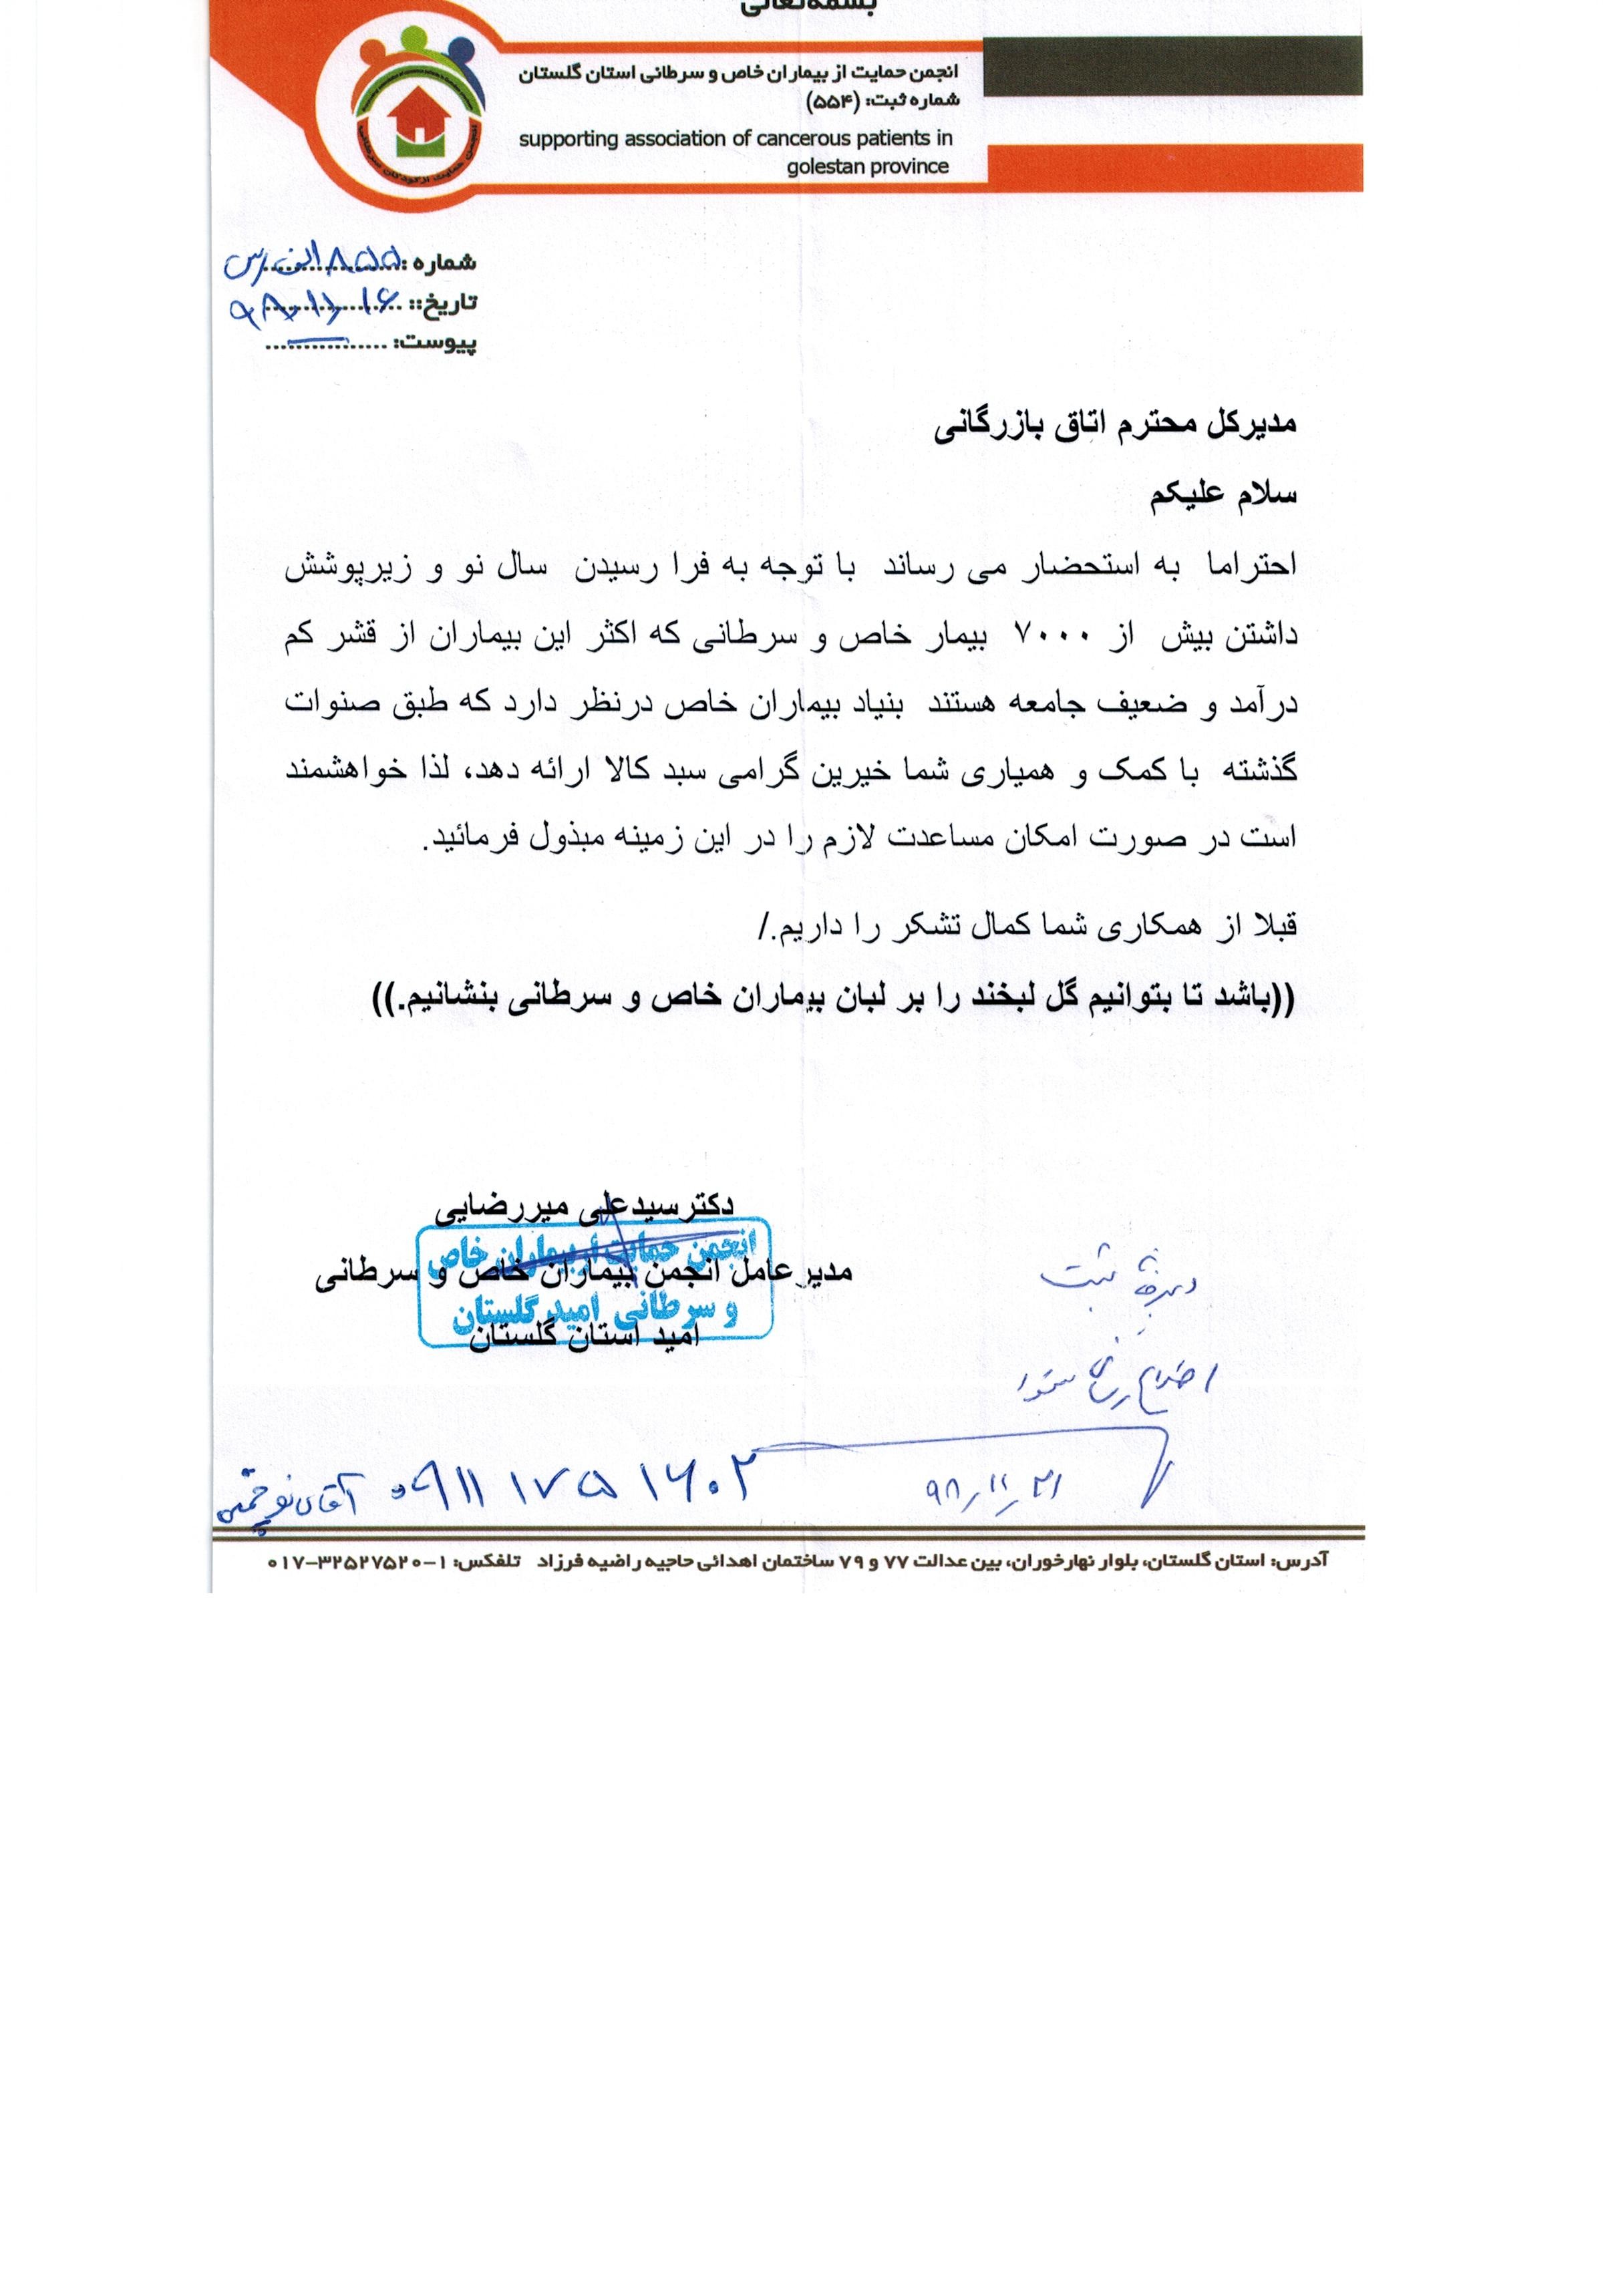 درخواست مساعدت از آقای میر رضائی انجمن بیماران خاص و سرطانی استان